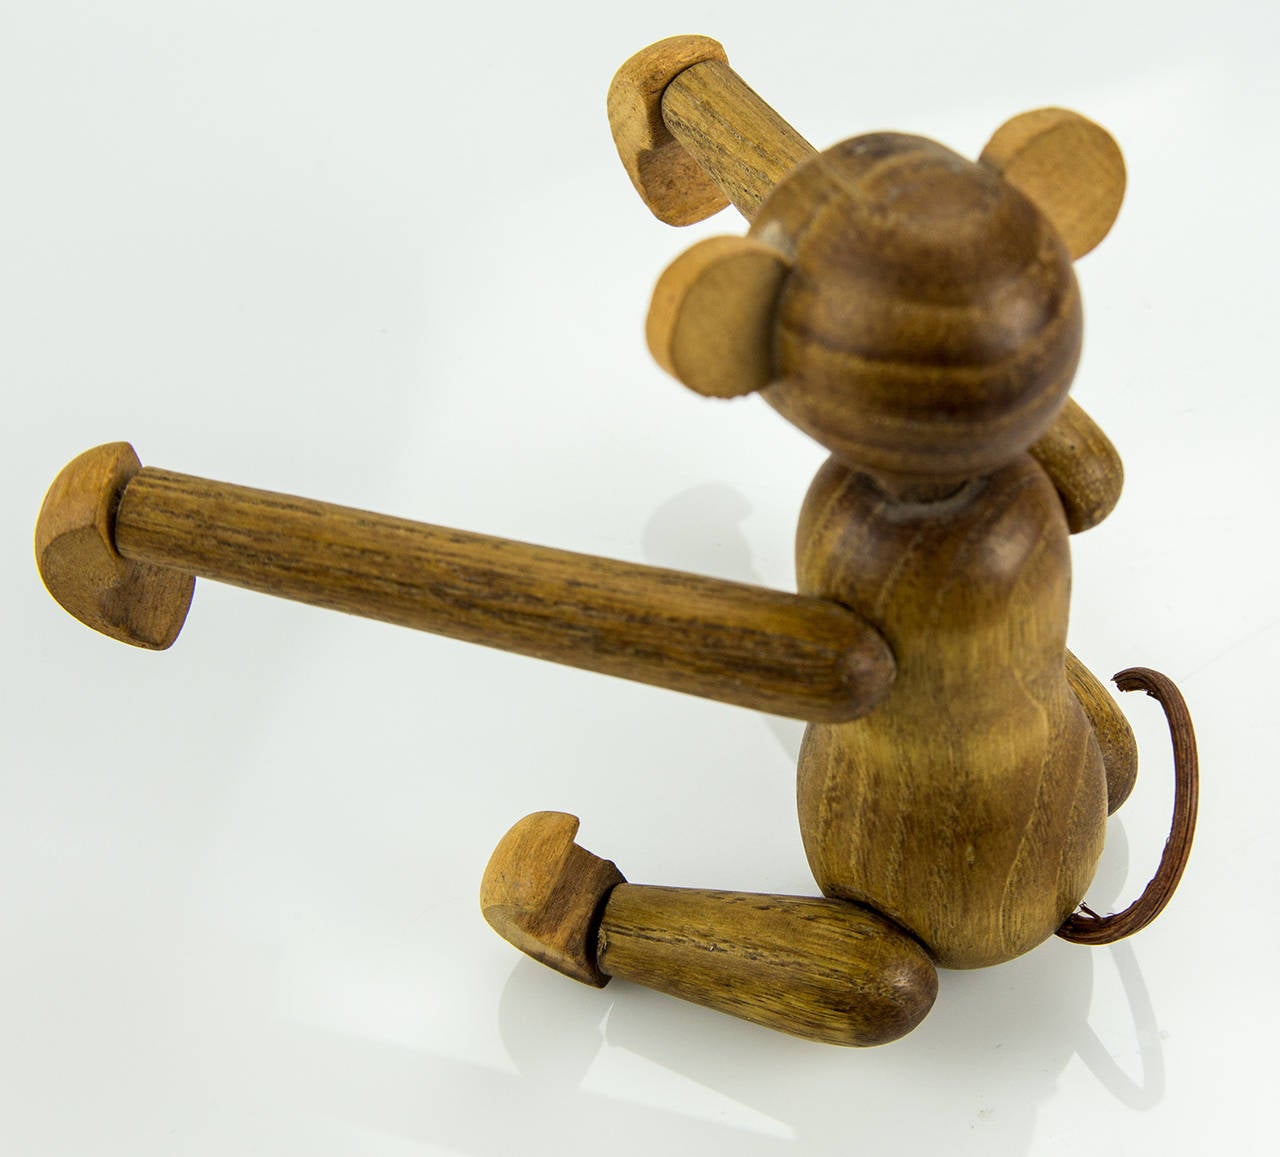 wooden toy monkey